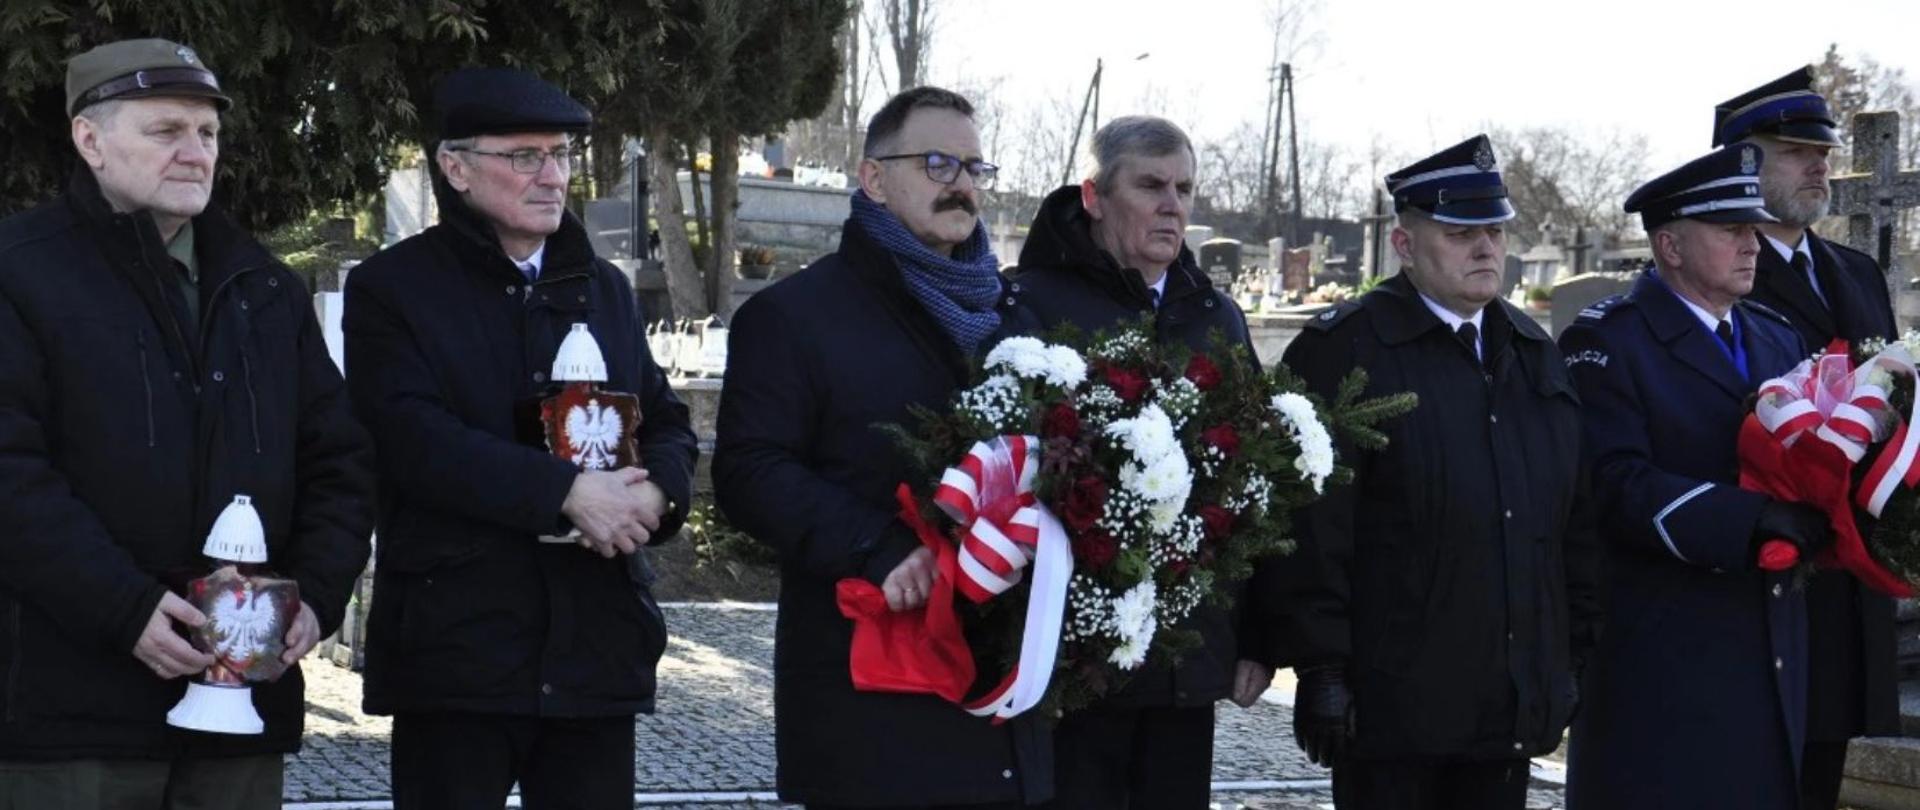 Przedstawiciele Powiatu Lipskiego oraz komendanci służb bezpieczeństwa powiatu podczas apelu Pamięci na cmentarzu parafialnym w Lipsku.